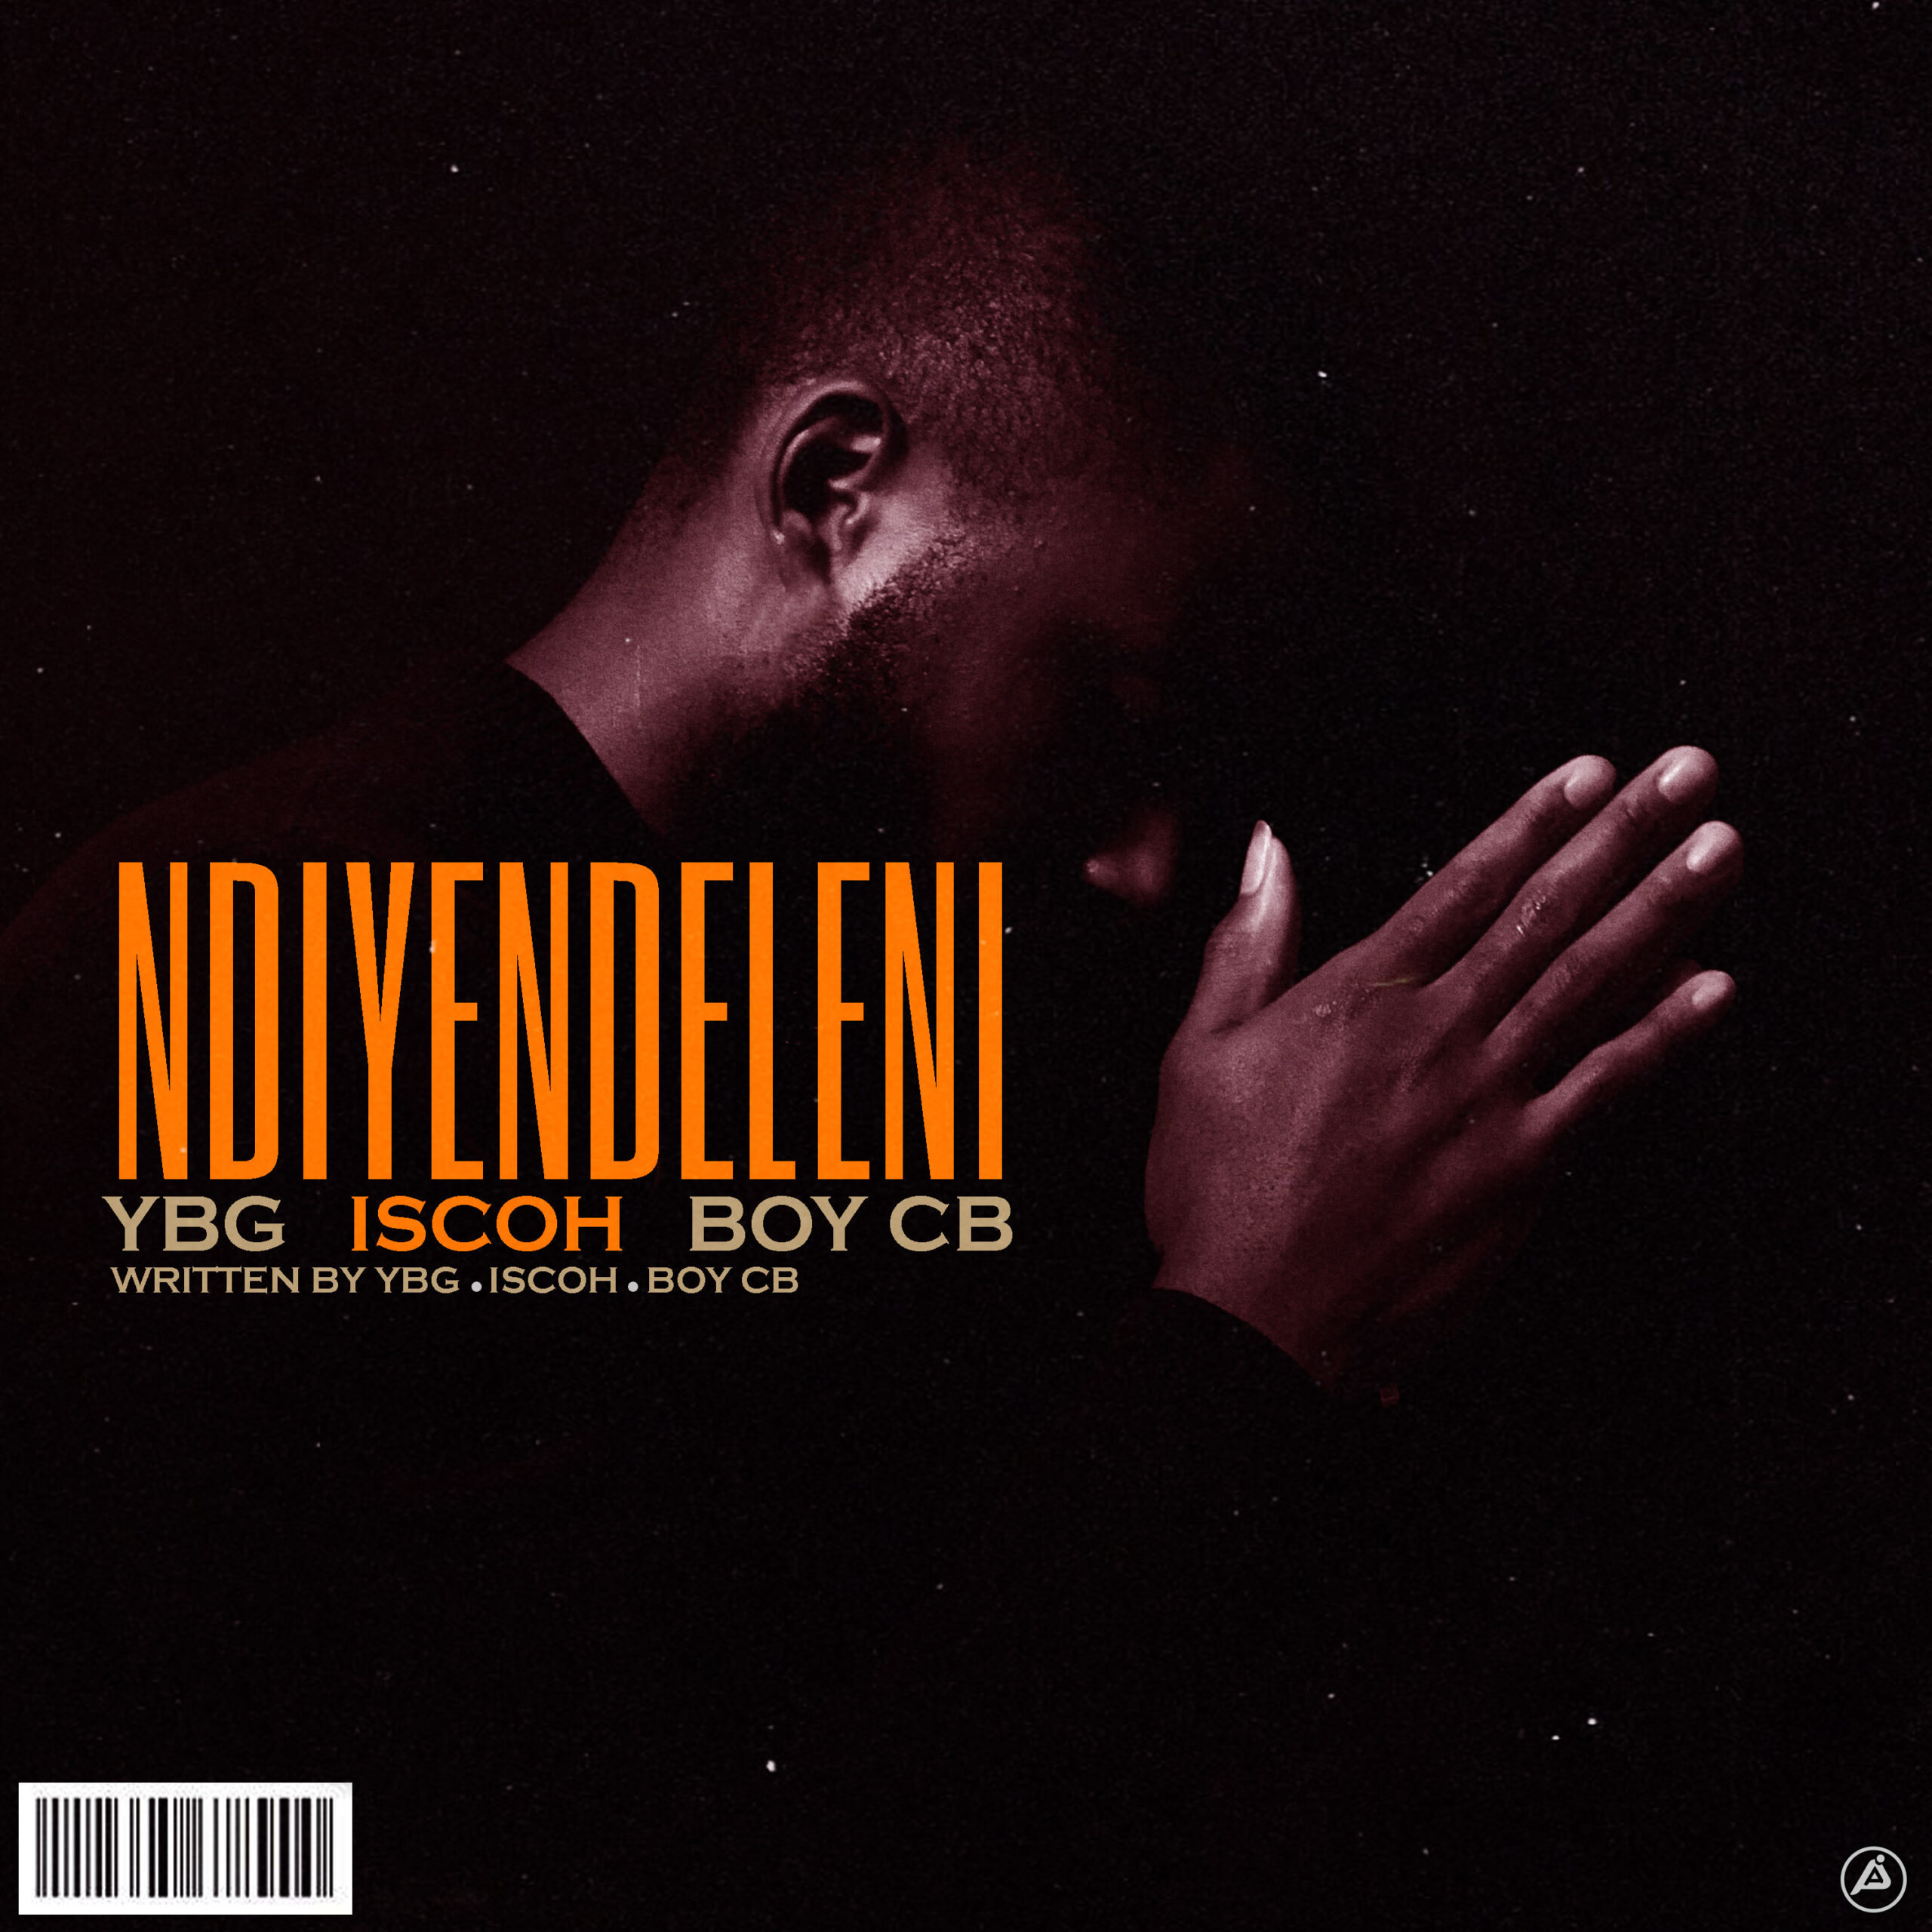  [Music Download] YBG, Iscoh & Boy CB – Ndiyendeleni